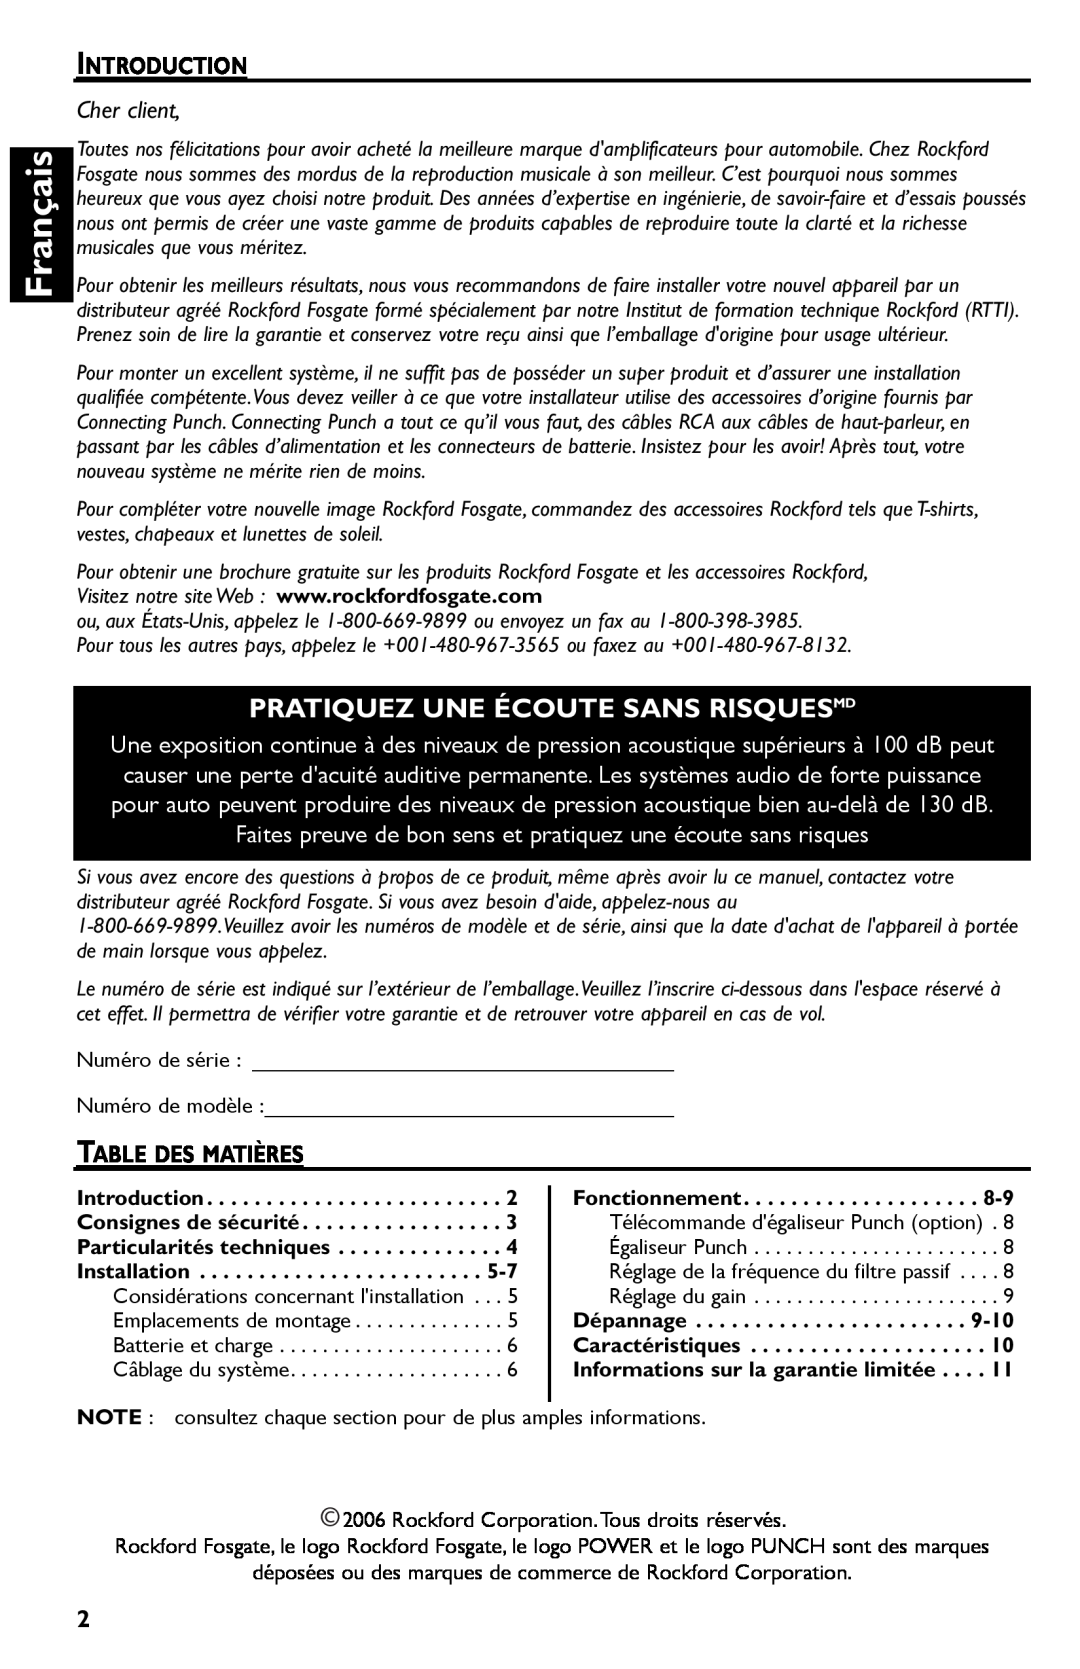 Rockford Fosgate T600-2, T400-2 manual Français, Pratiquez Une Écoute Sans Risquesmd, Cher client 